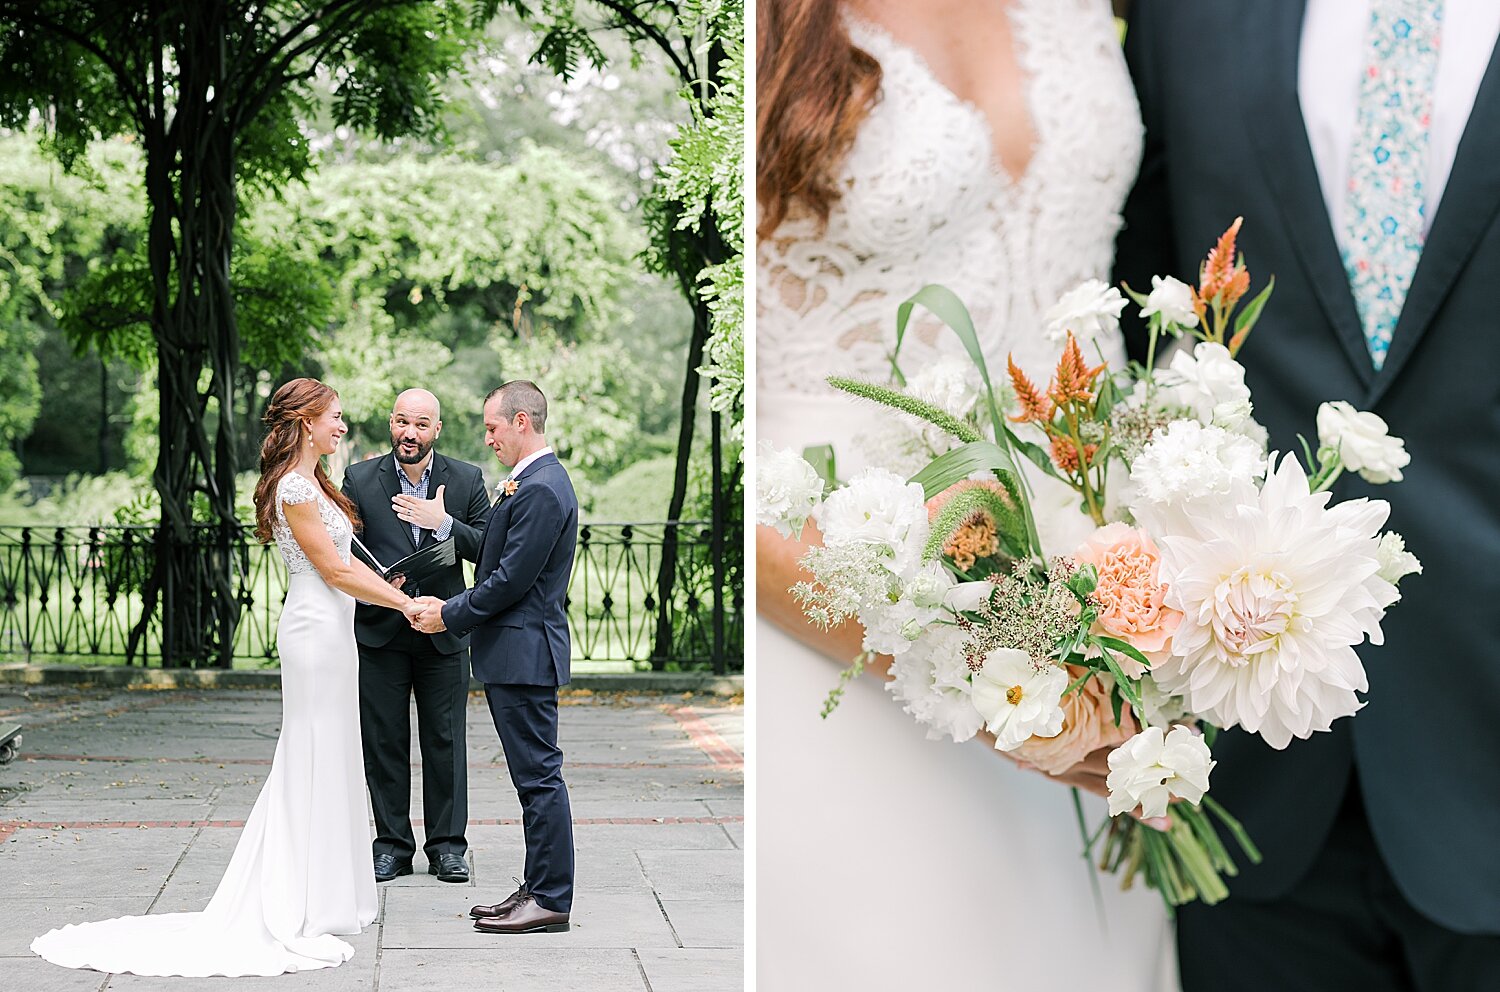 Central Park elopement | Asher Gardner Photography | Elopement at the Central Park Conservatory Gardens